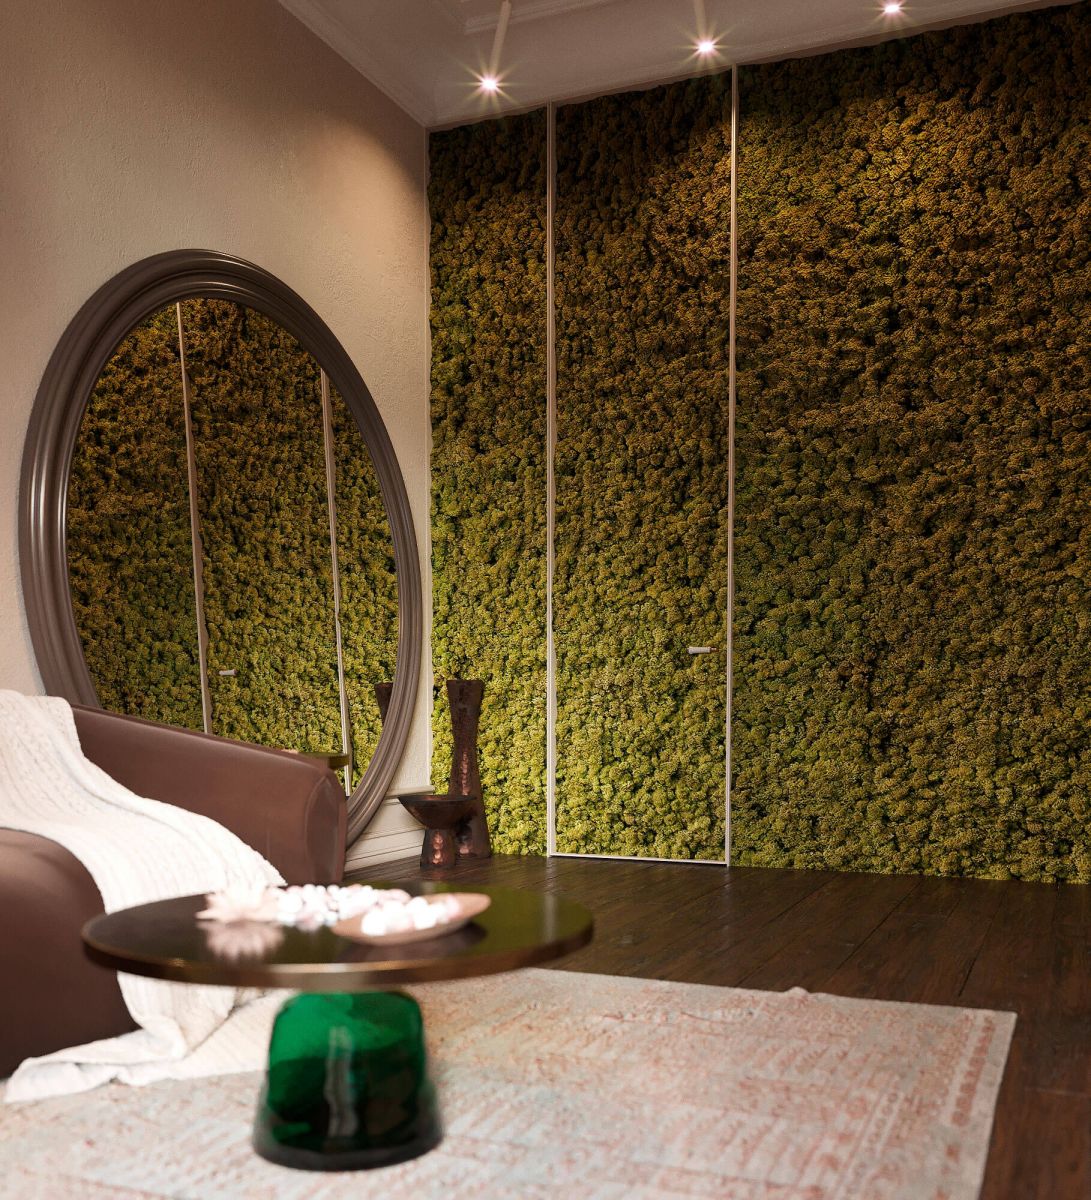 Стена комнаты покрыта натуральным мхом приятного зеленого цвета, дающего ощущение единения с природой.